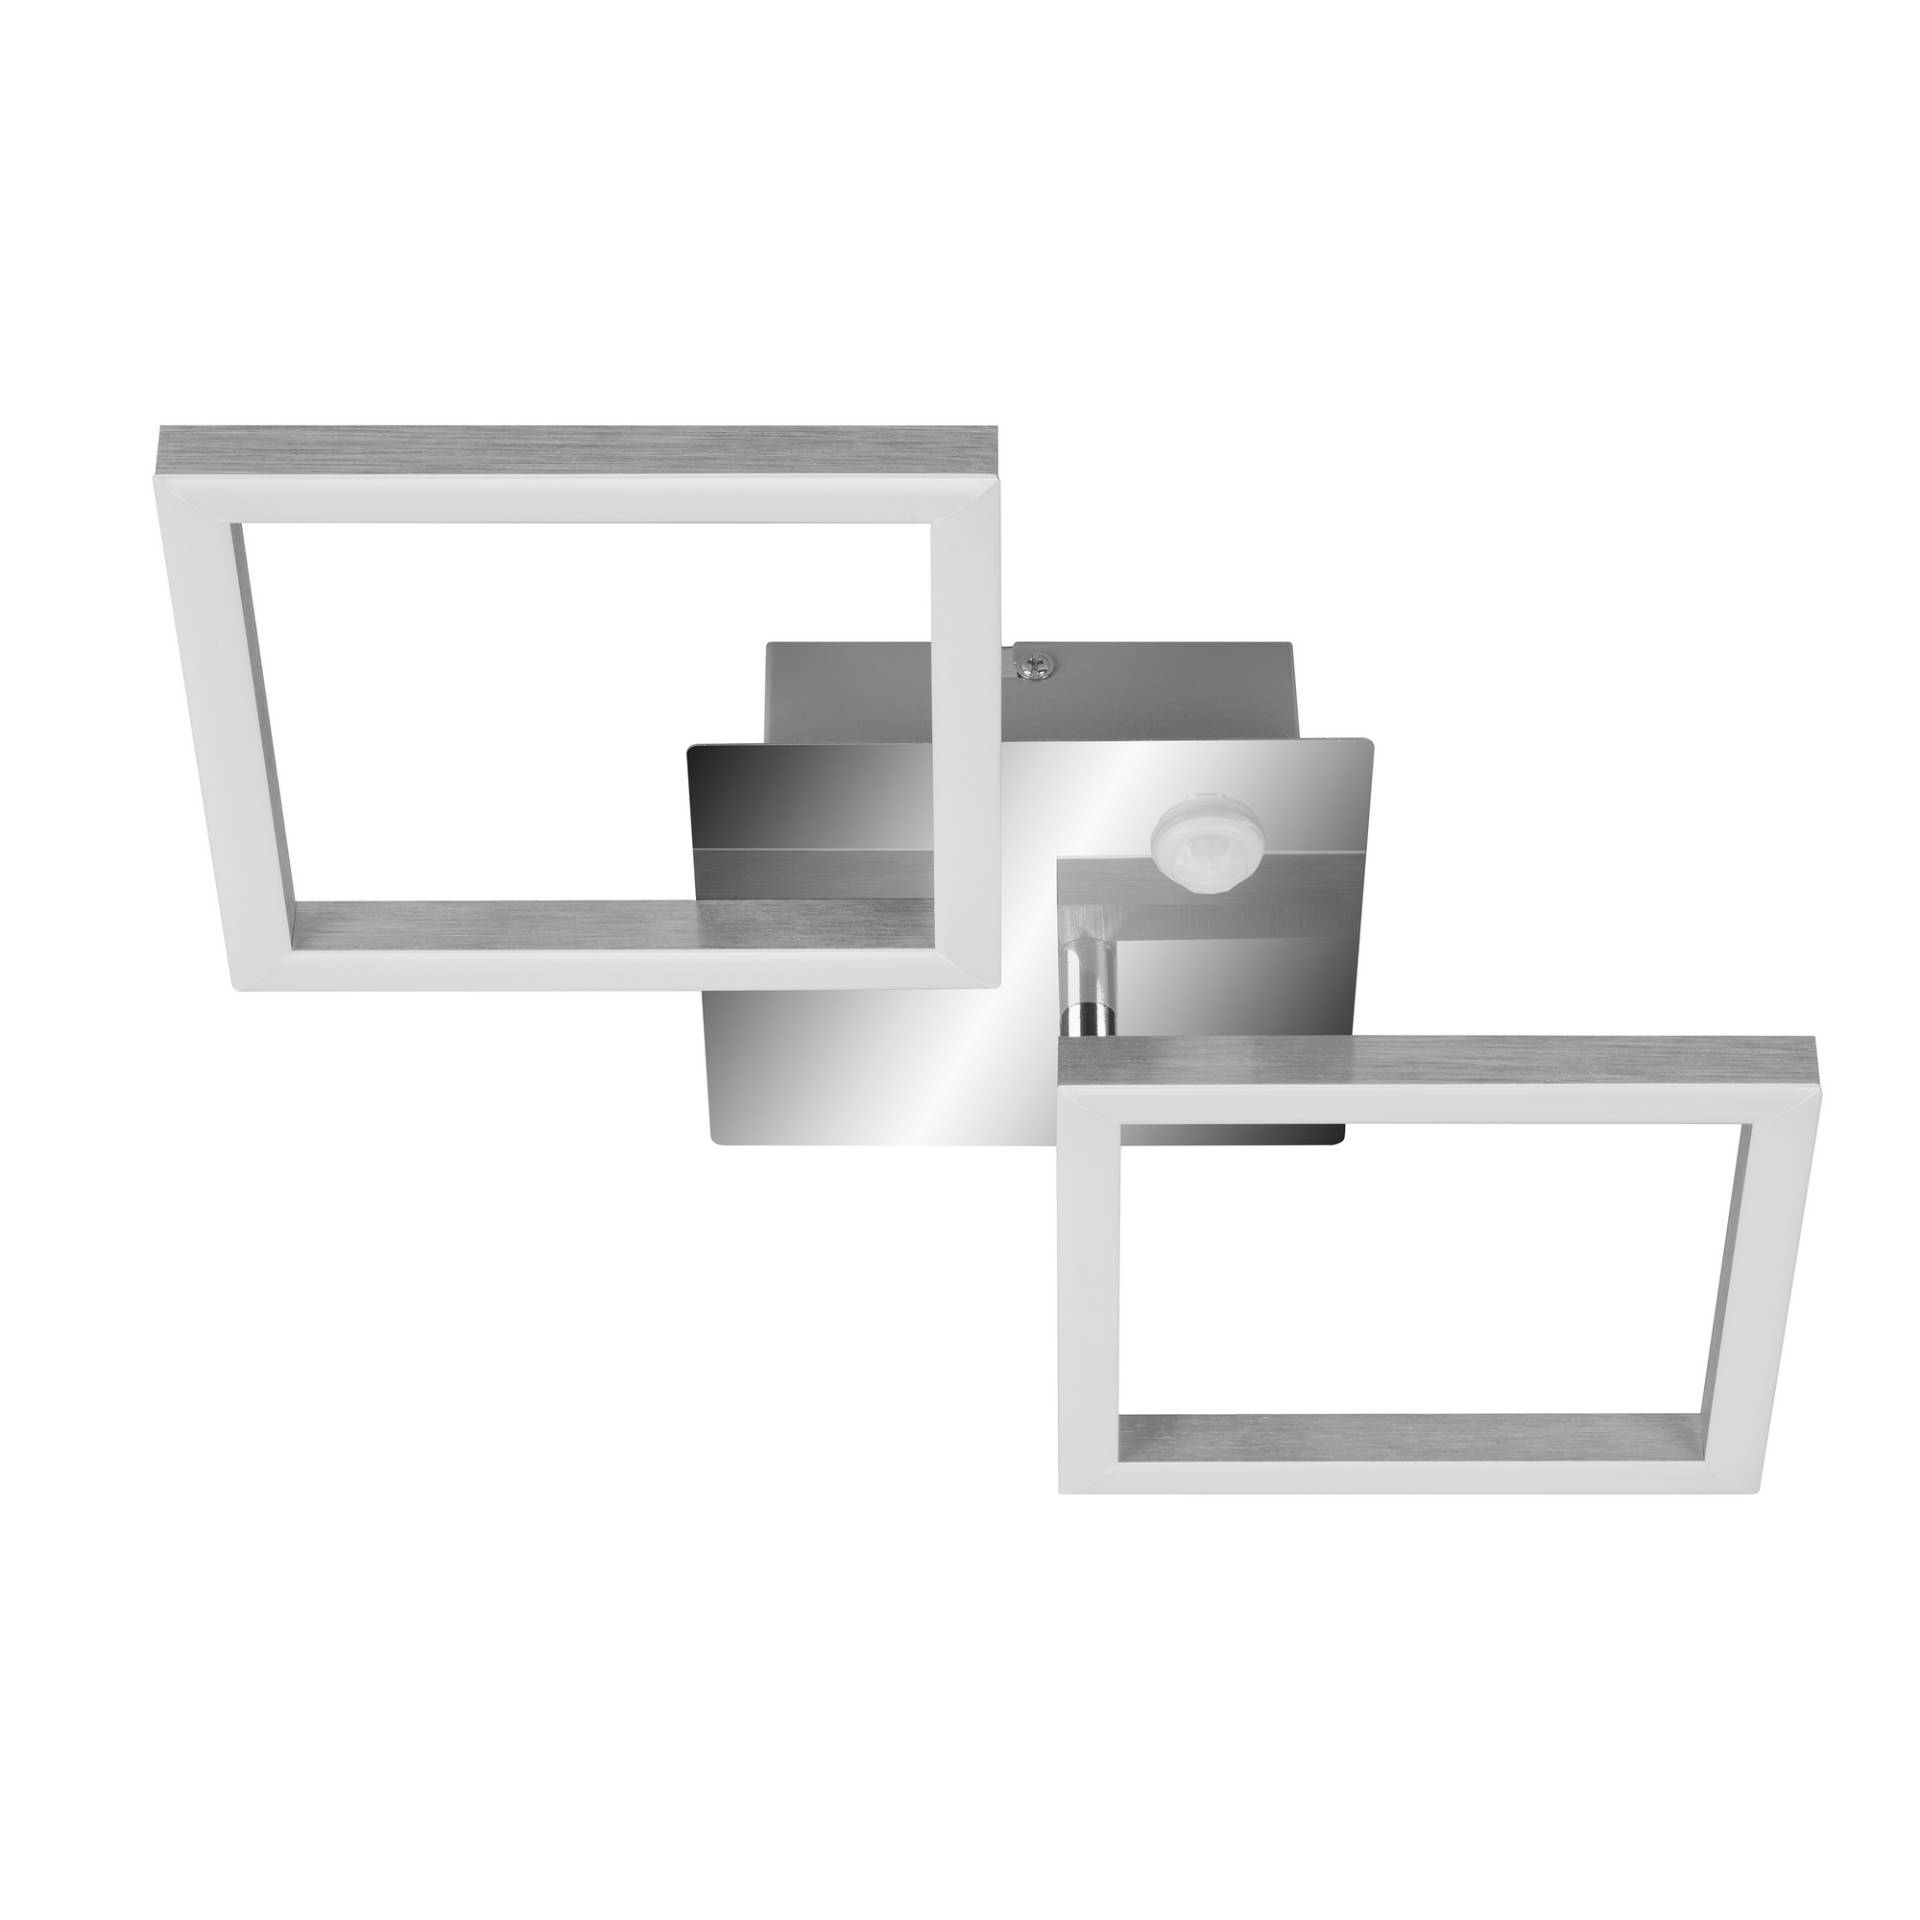 Telefunken LED-Deckenleuchte 'Frame' chrom/aluminium 47 x 22,6 x 7,4 cm, mit Bewegungsmelder von Telefunken